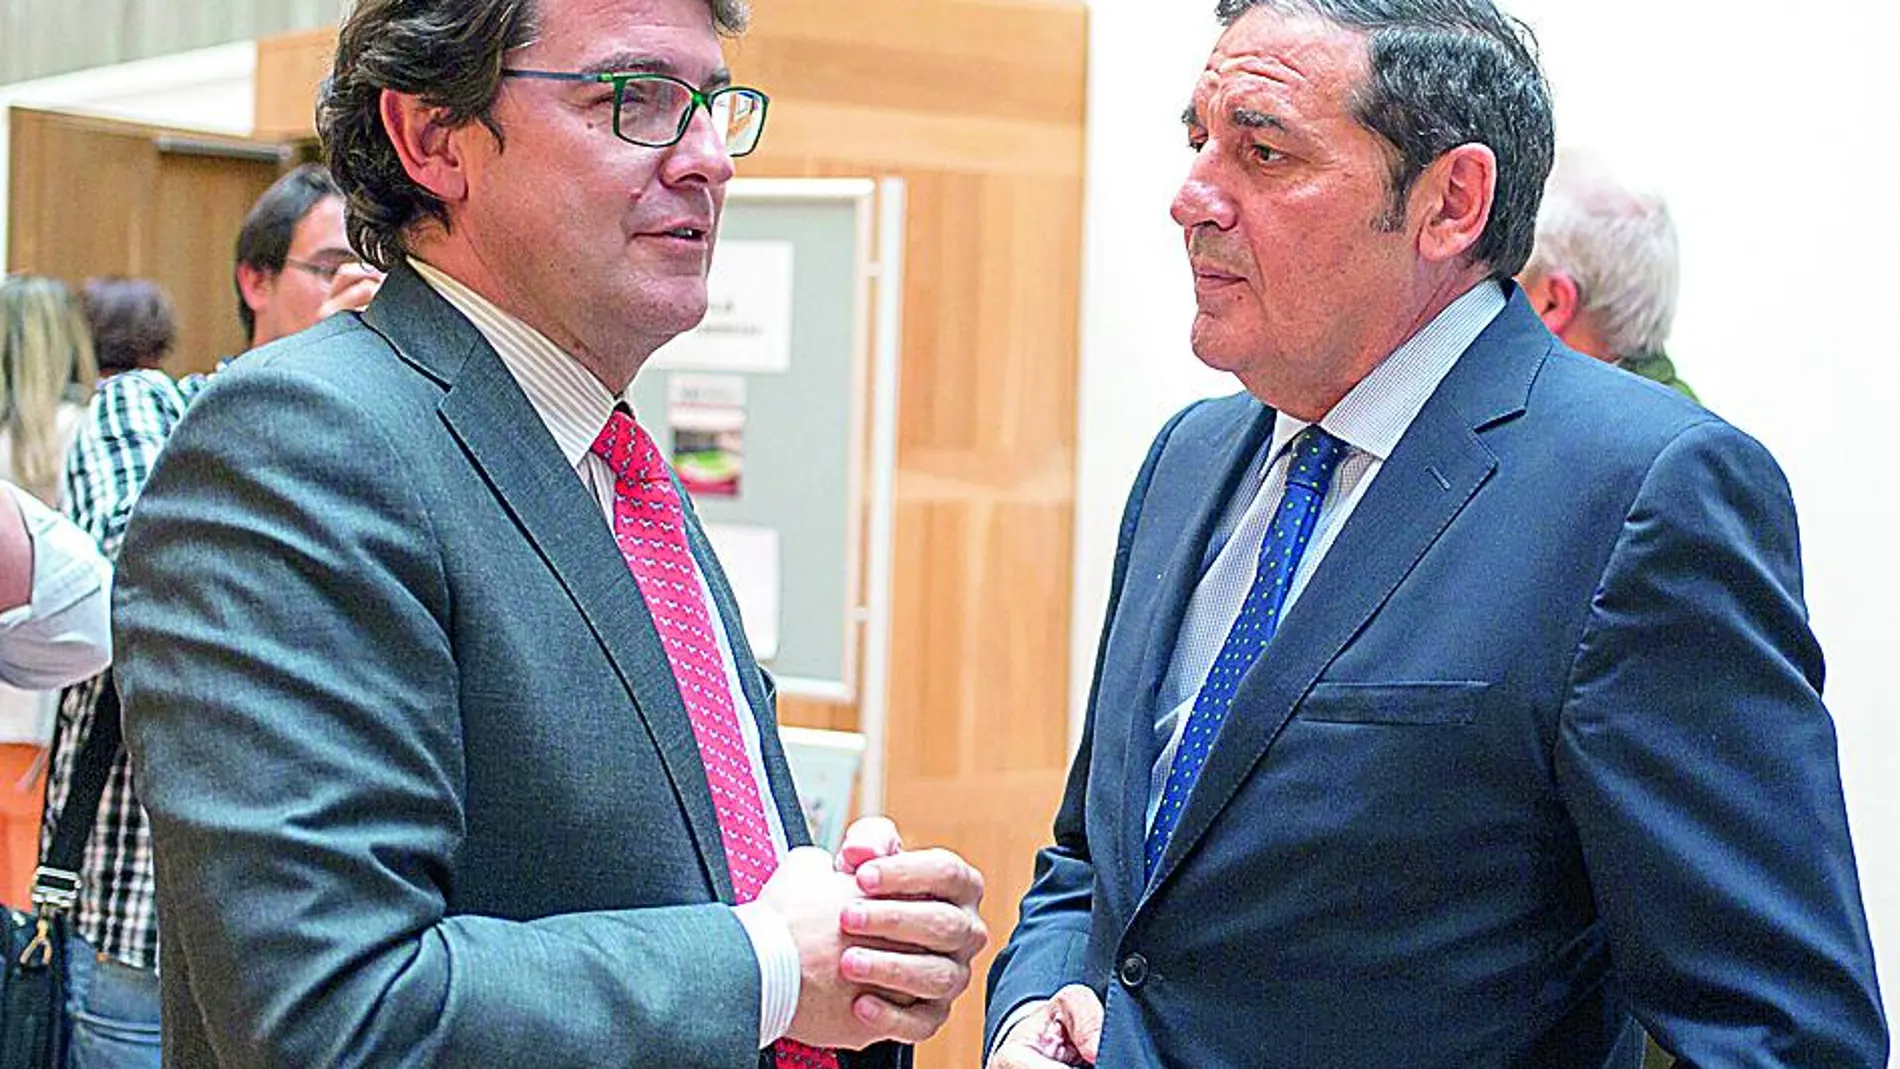 El consejero de Sanidad, Antonio Sáez Aguado, conversa con el alcalde de Salamanca, Alfonso Fernández Mañueco, momentos antes de inaugurar la jornada farmacéutica.